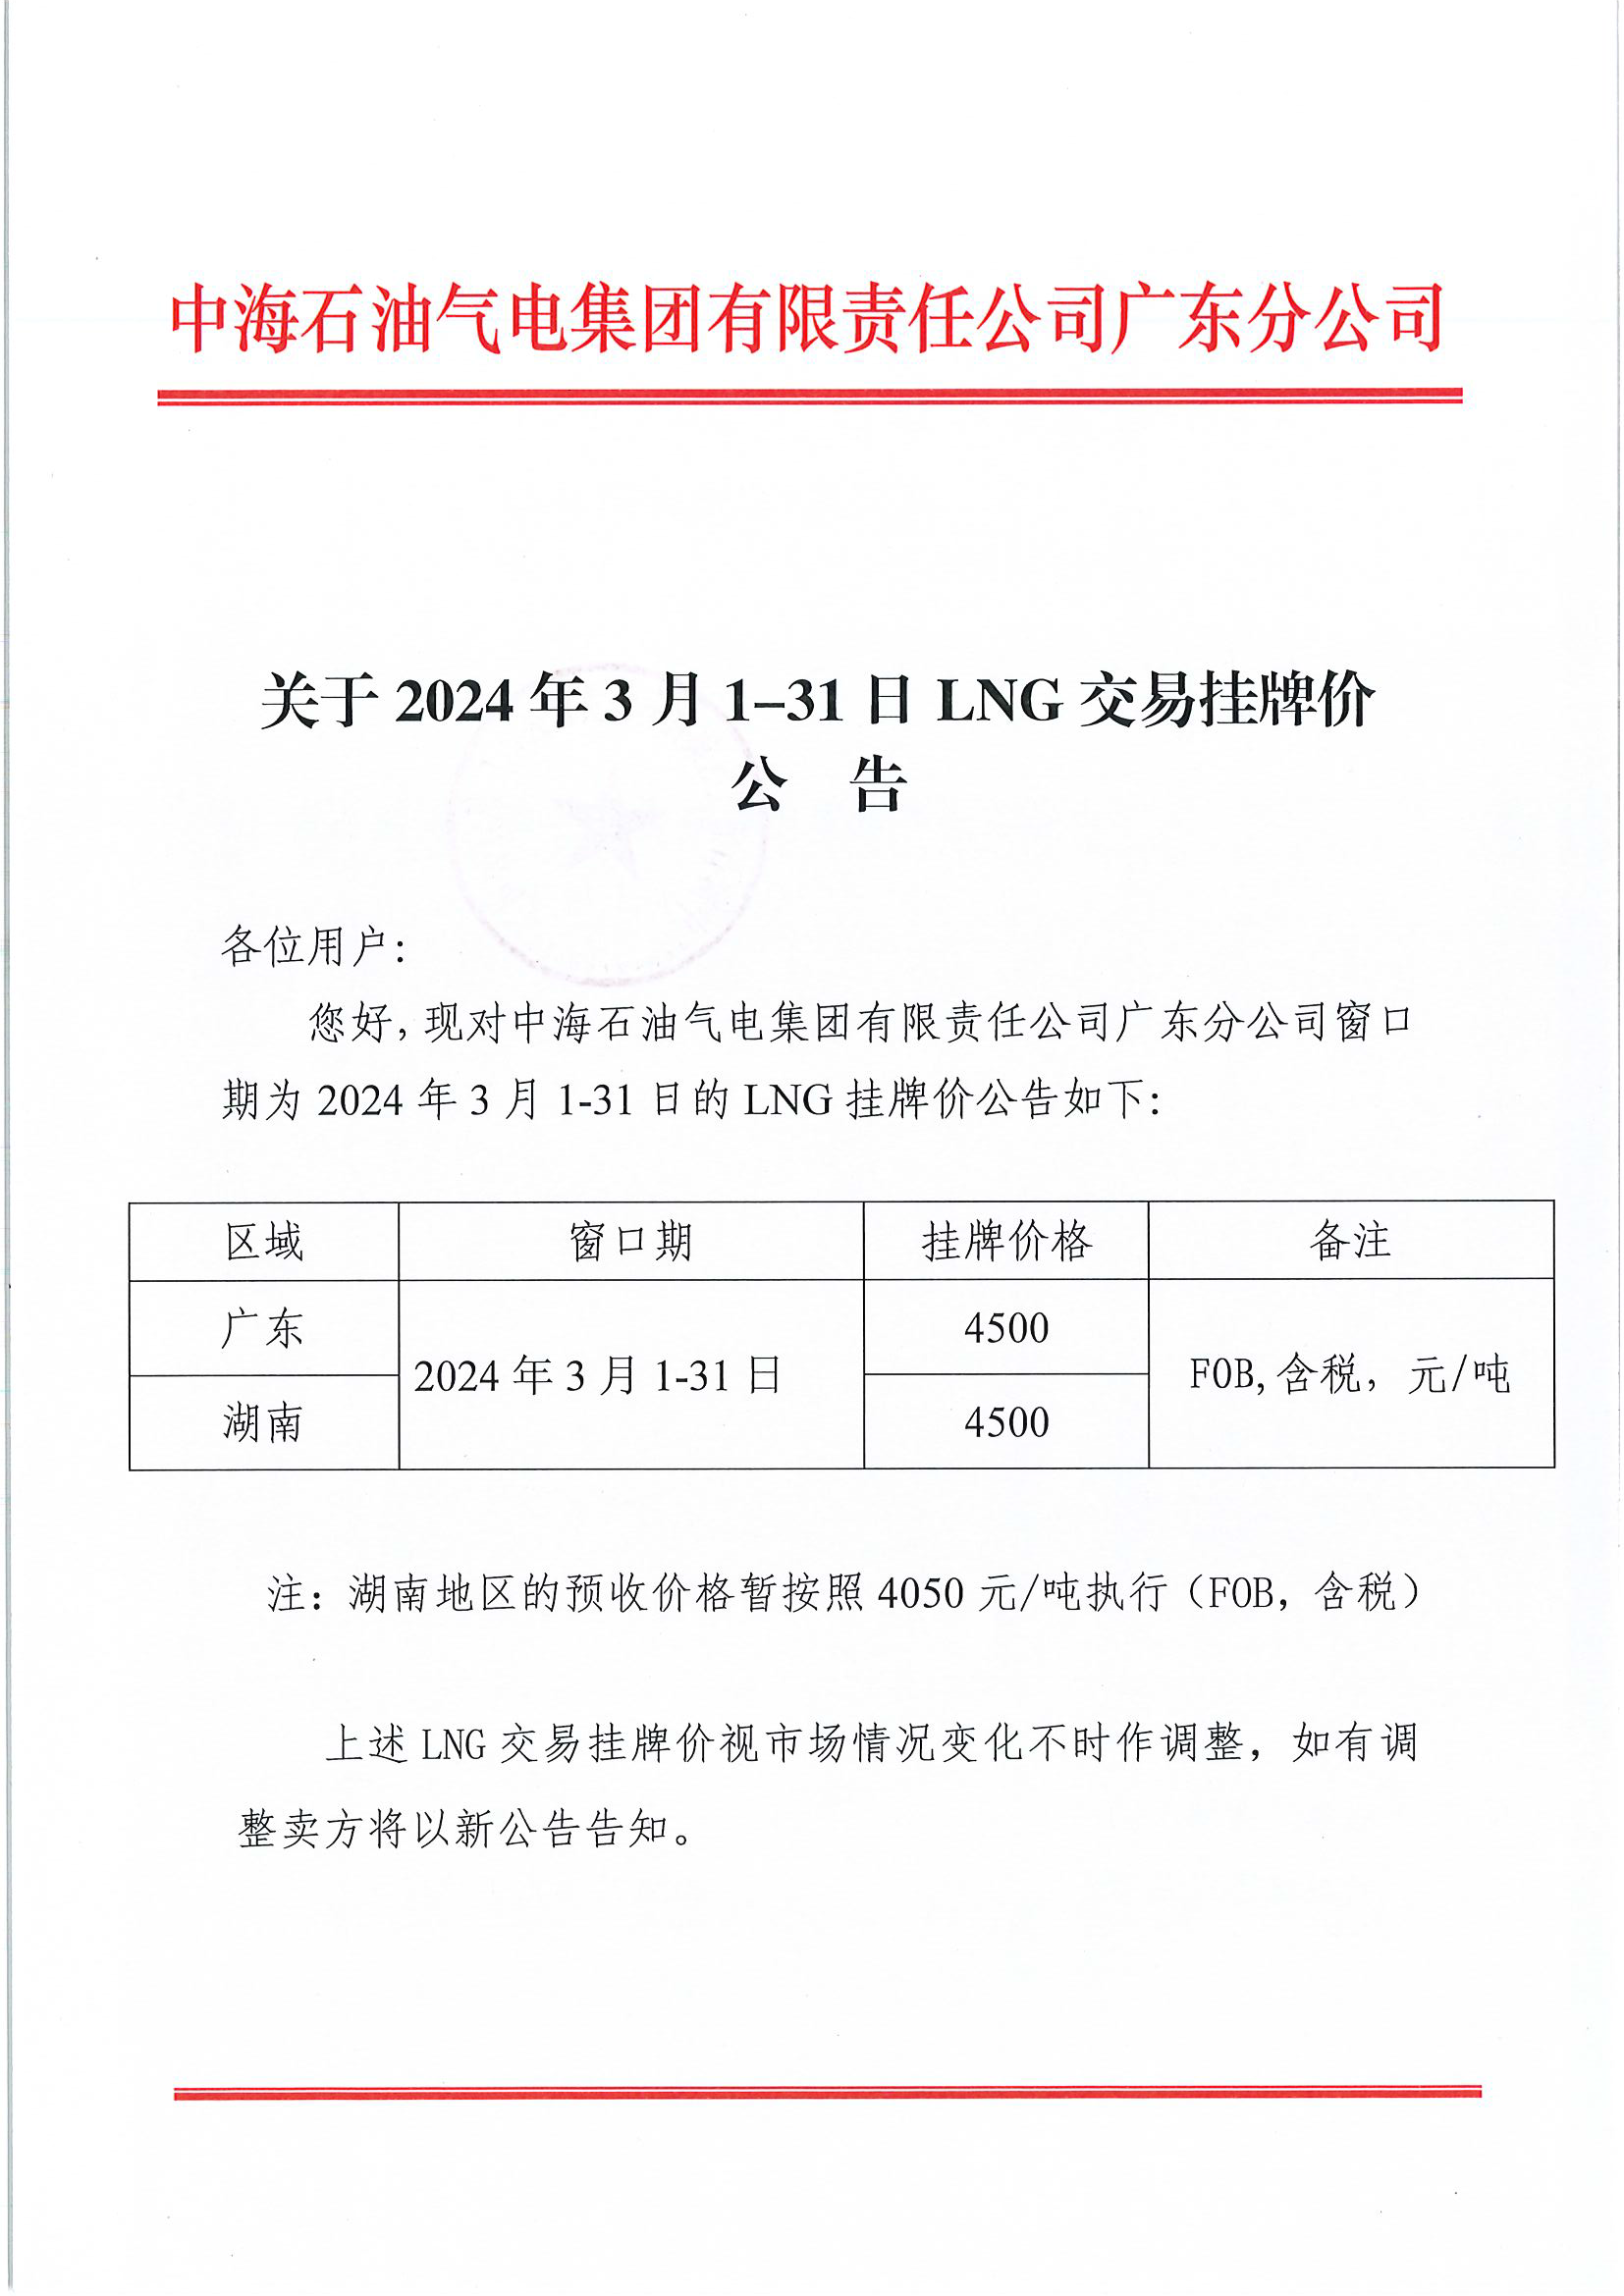 中海石油气电集团有限责任公司广东分公司关于2024年3月1-31日LNG交易挂牌价公告（广东、湖南地区）_页面_1.png